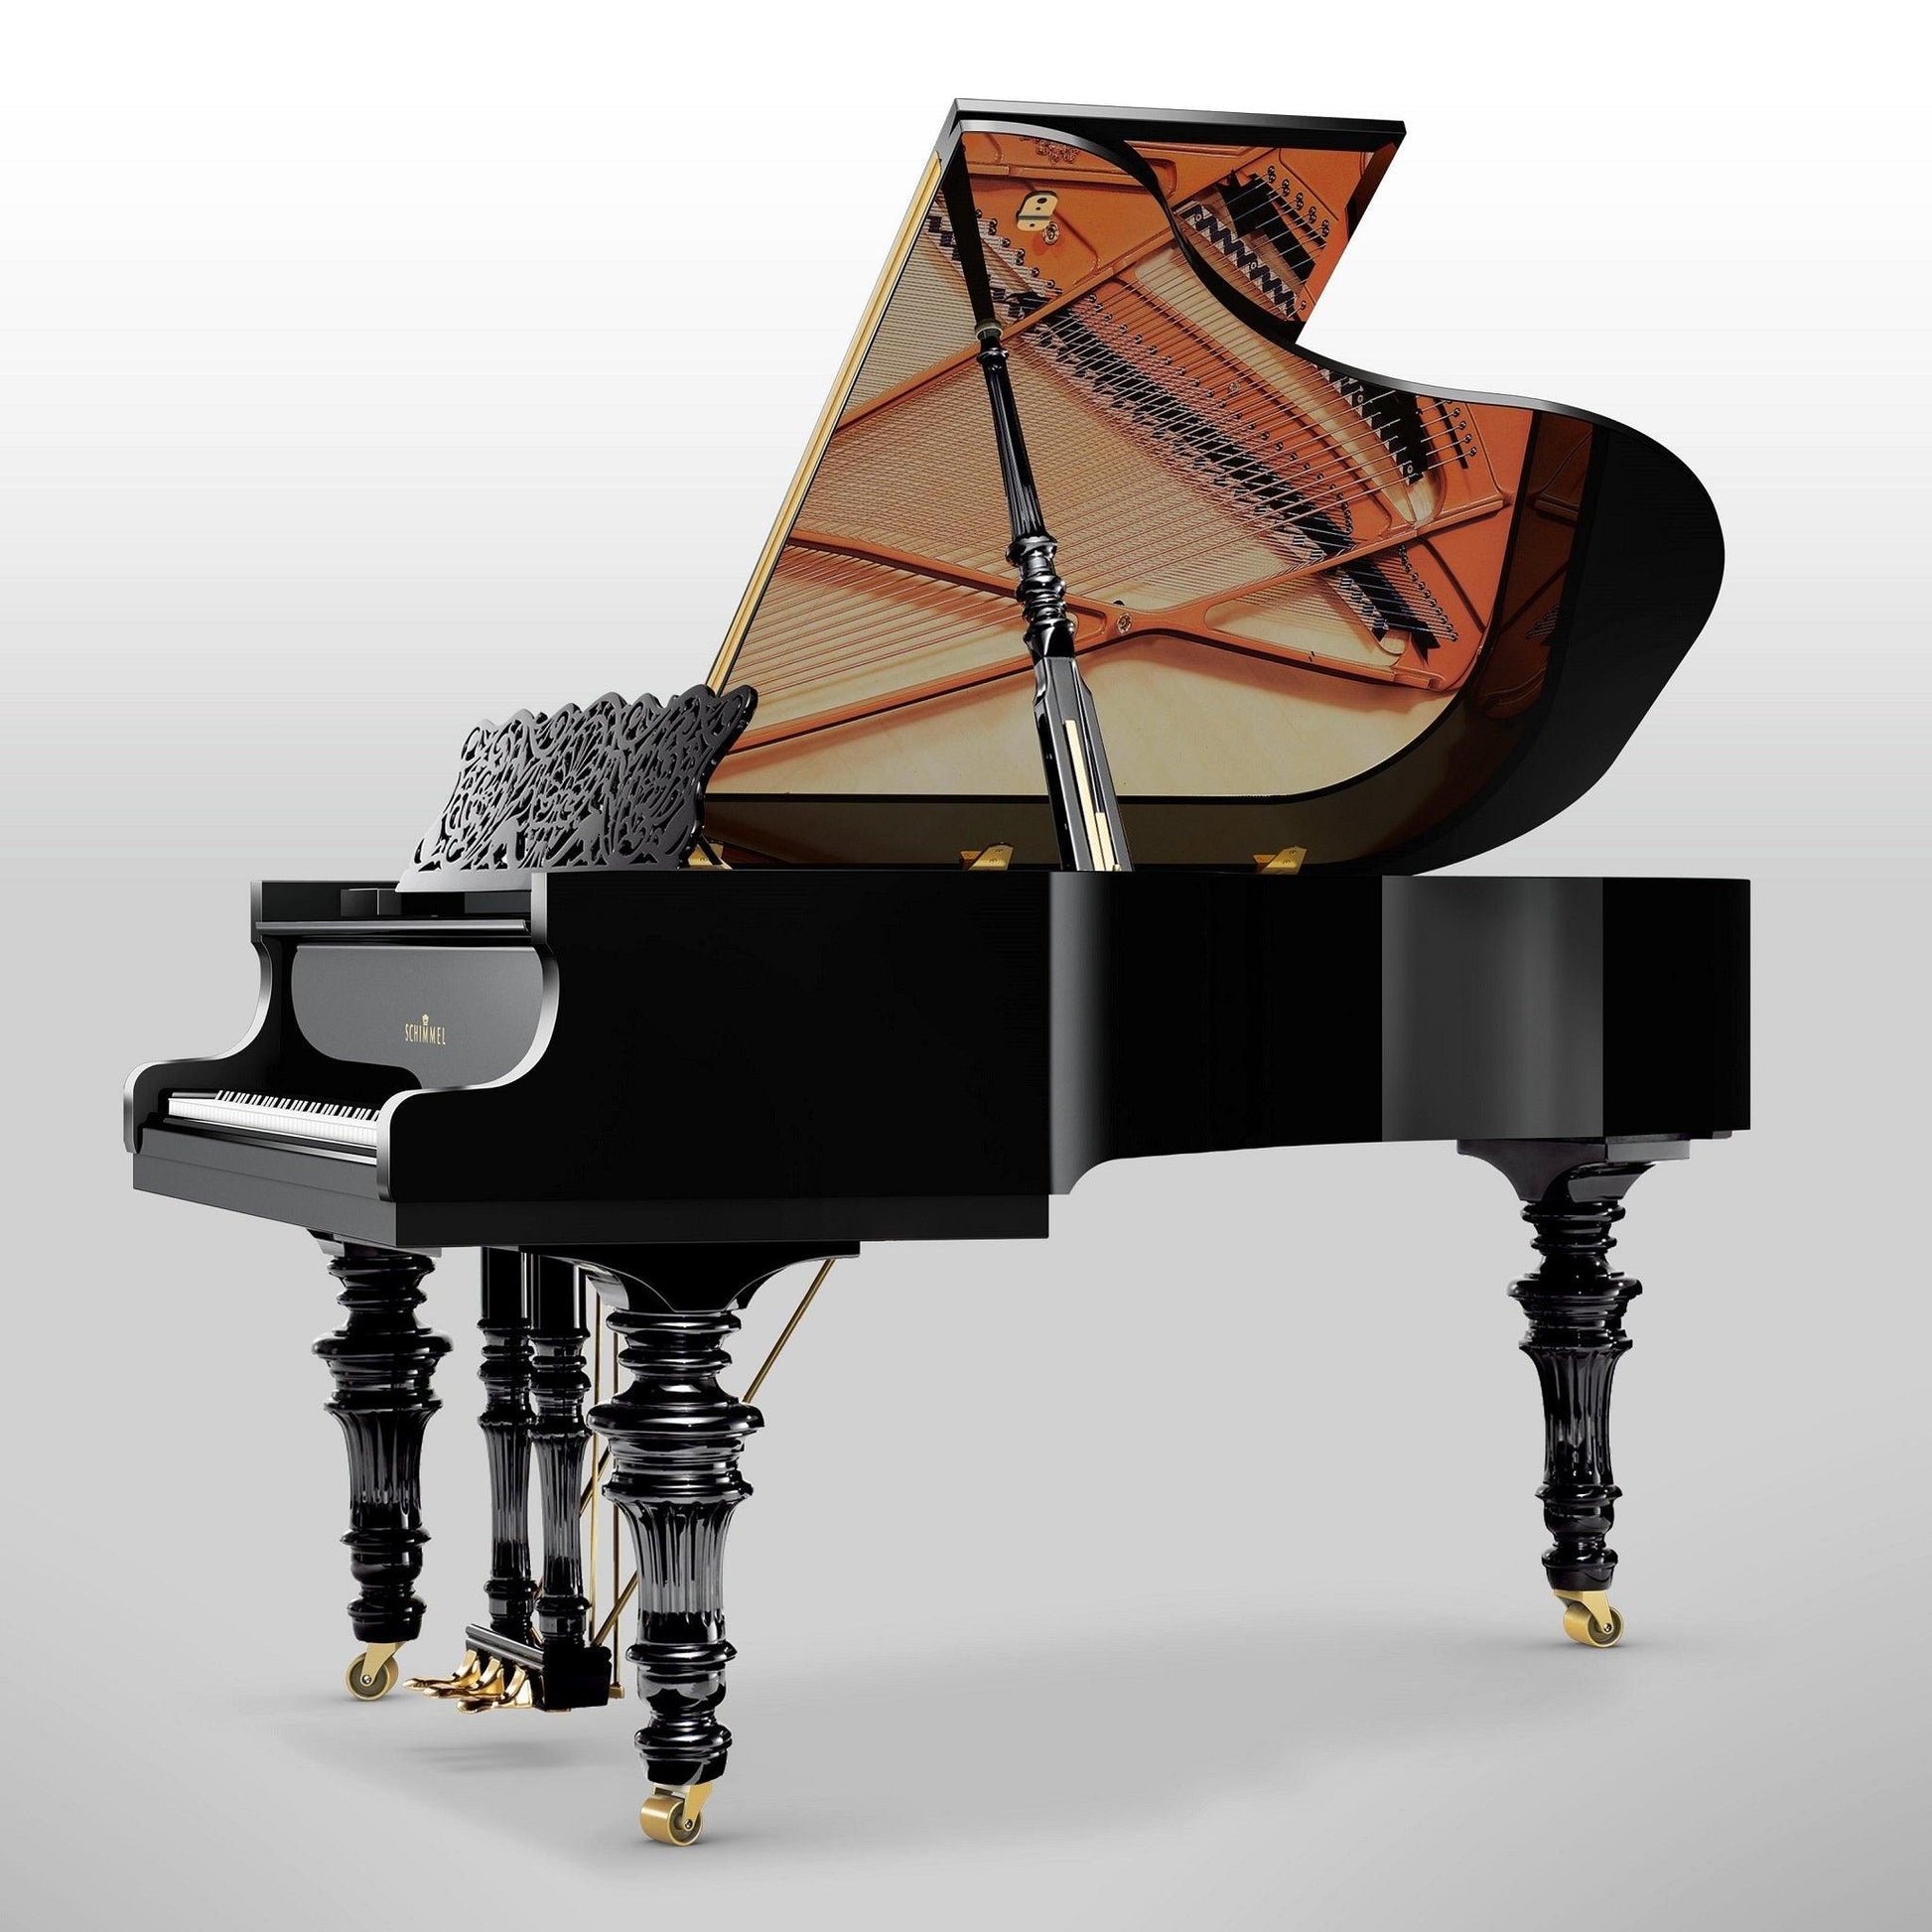 Schimmel Classic C169 Belle Epoque Grand Piano - Orpheus Music